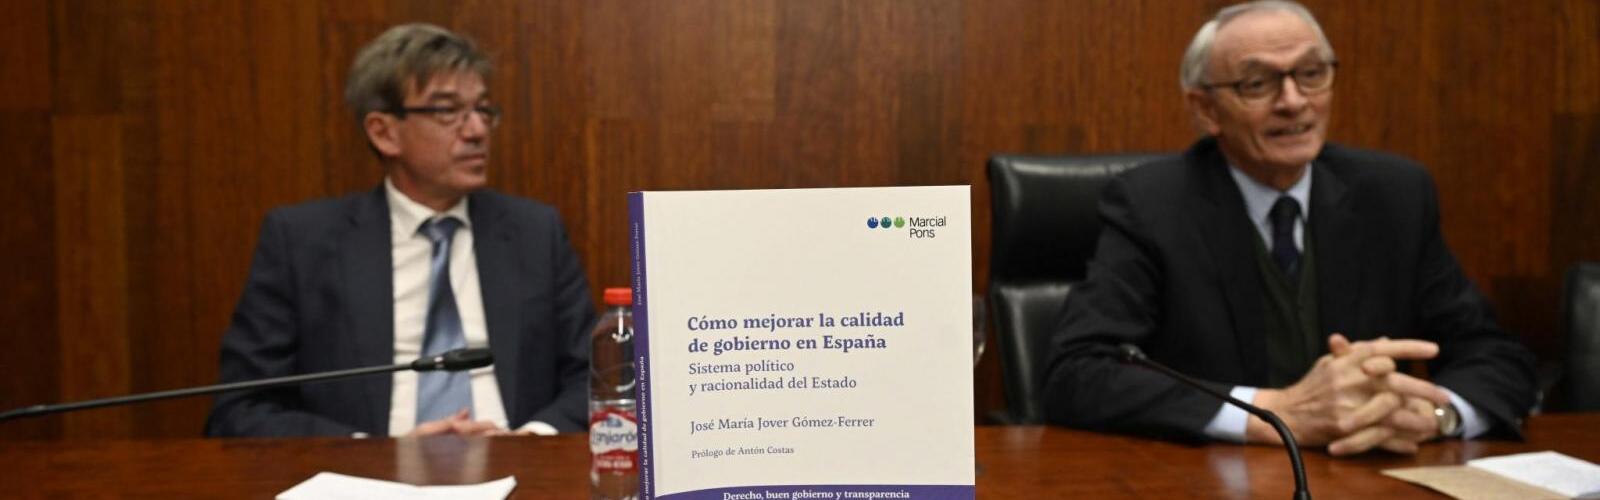 Nota de prensa - José María Jover, letrado mayor del Consejo de Estado, presenta en la UMU su libro 'Cómo mejorar la calidad de gobierno en España'